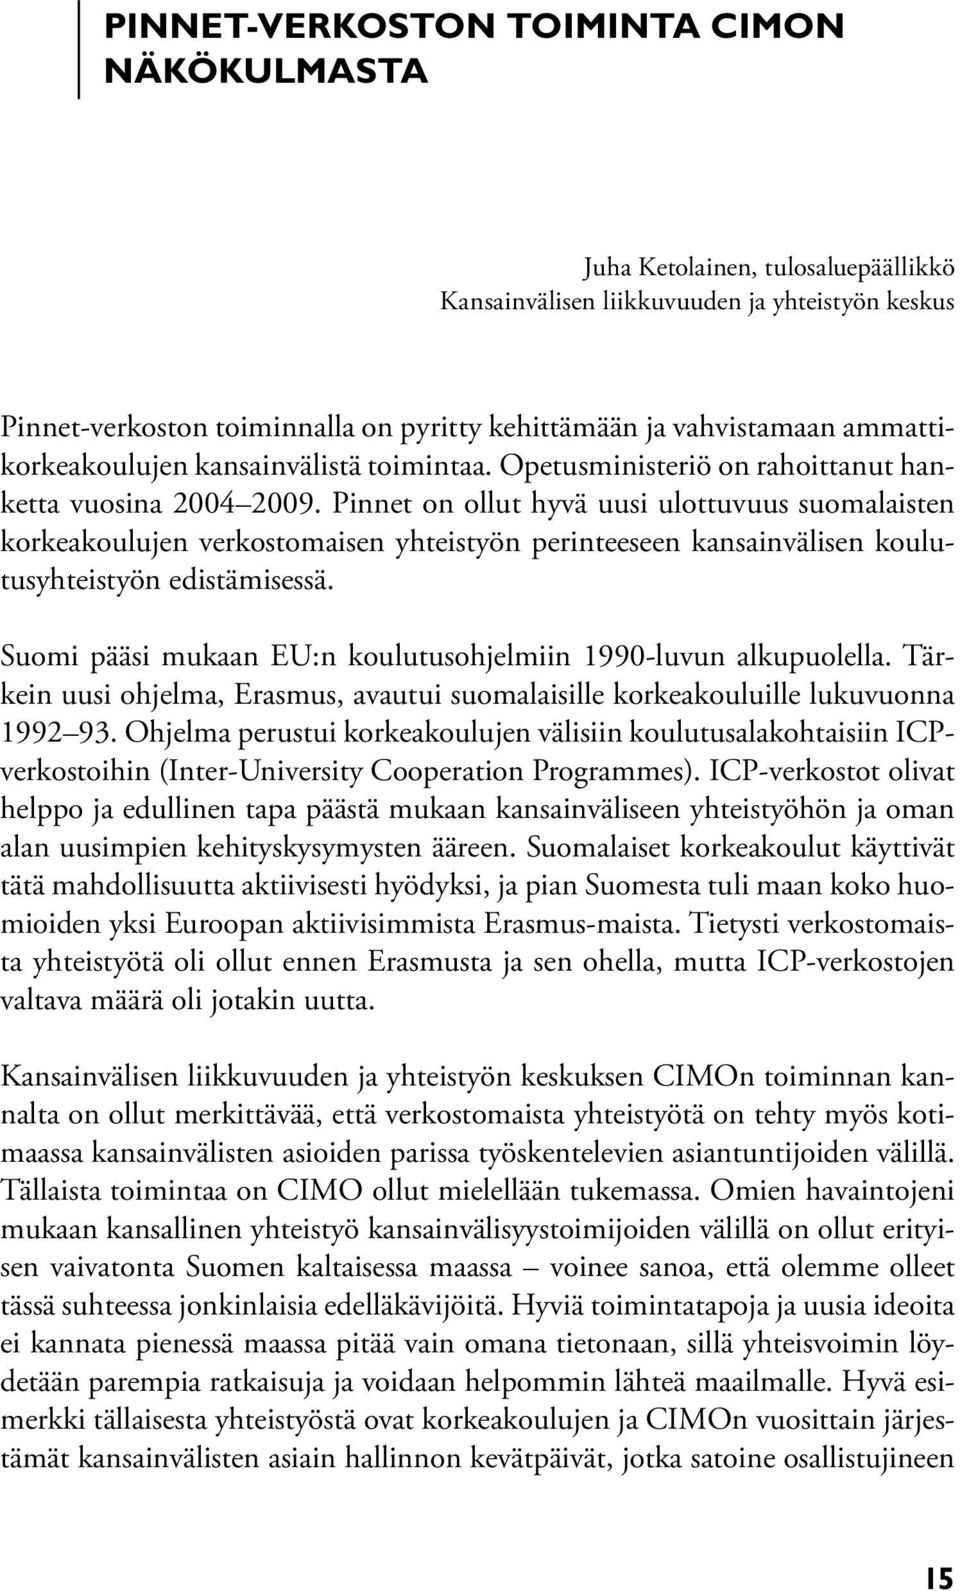 Pinnet on ollut hyvä uusi ulottuvuus suomalaisten korkeakoulujen verkostomaisen yhteistyön perinteeseen kansainvälisen koulutusyhteistyön edistämisessä.